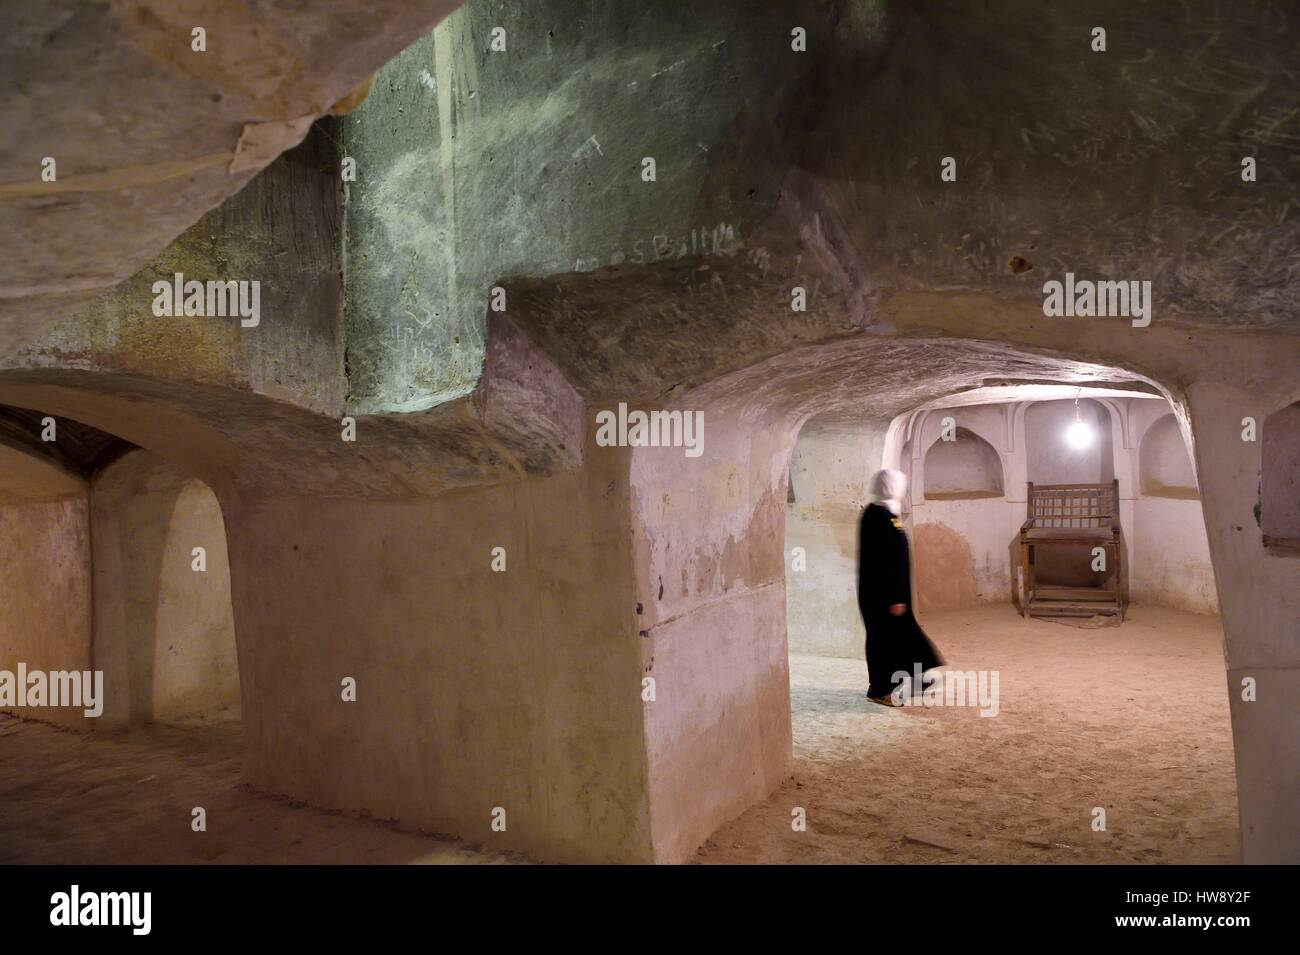 Iran, Ispahan province, Dasht-e Kavir désert, ville de Nain Naein, également connu sous le nom de mosquée Jameh Khorasani style est un des plus anciens (9e siècle) en Iran et encore en usage, métro salle de prière, ancien lieu de culte zoroastrien Banque D'Images